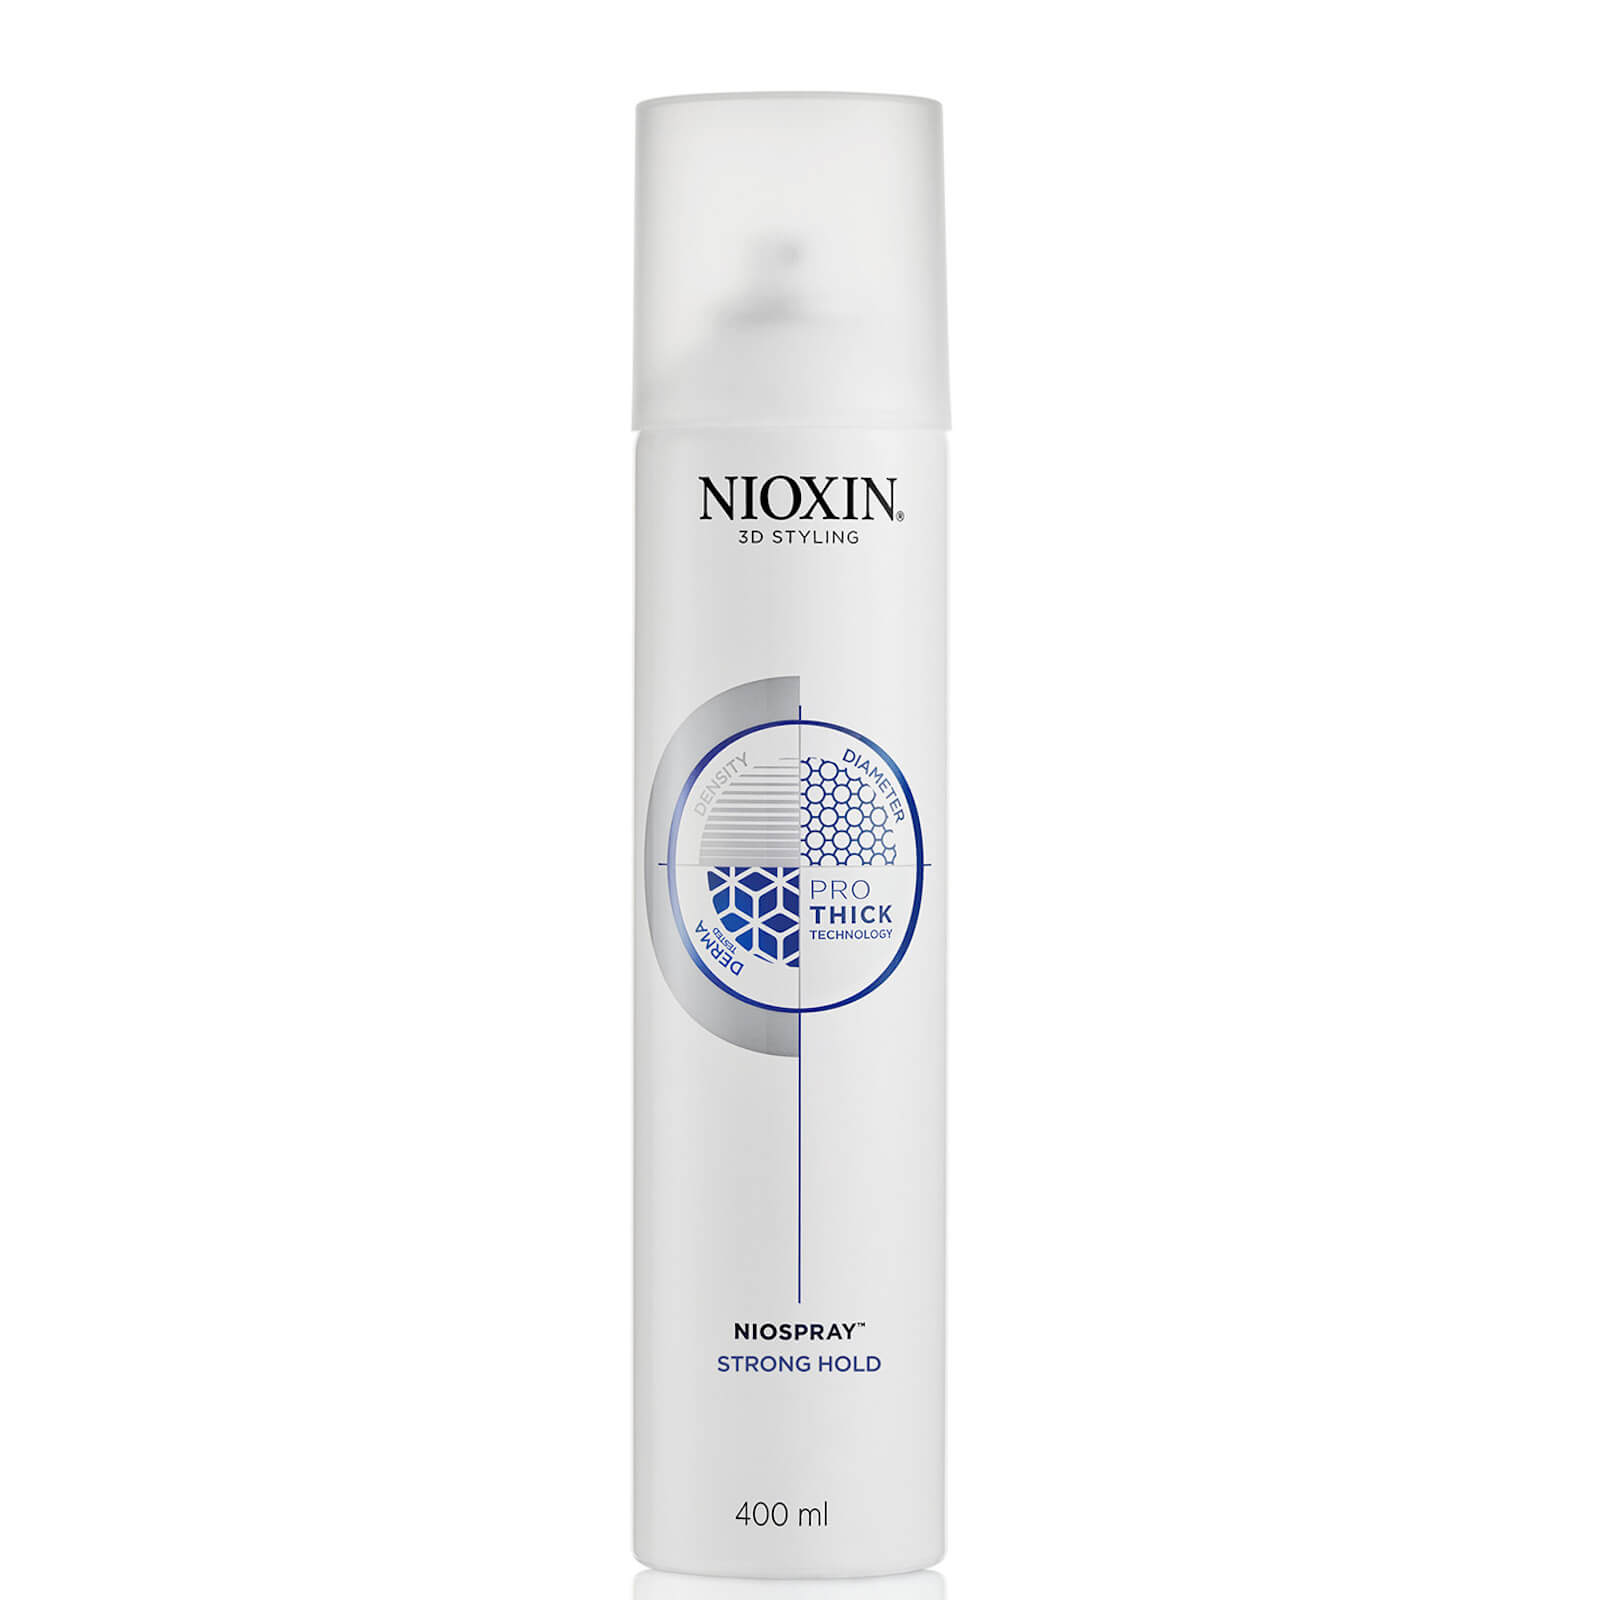 Стайлинг для волос сильной фиксации. Nioxin Niospray Regular hold лак спрей подвижной фиксации, 400 мл. Nioxin сухой шампунь для волос 180 мл.. Nioxin Therm Activ Protector - термозащитный спрей. Ниоксин термозащитный спрей 150 мл.